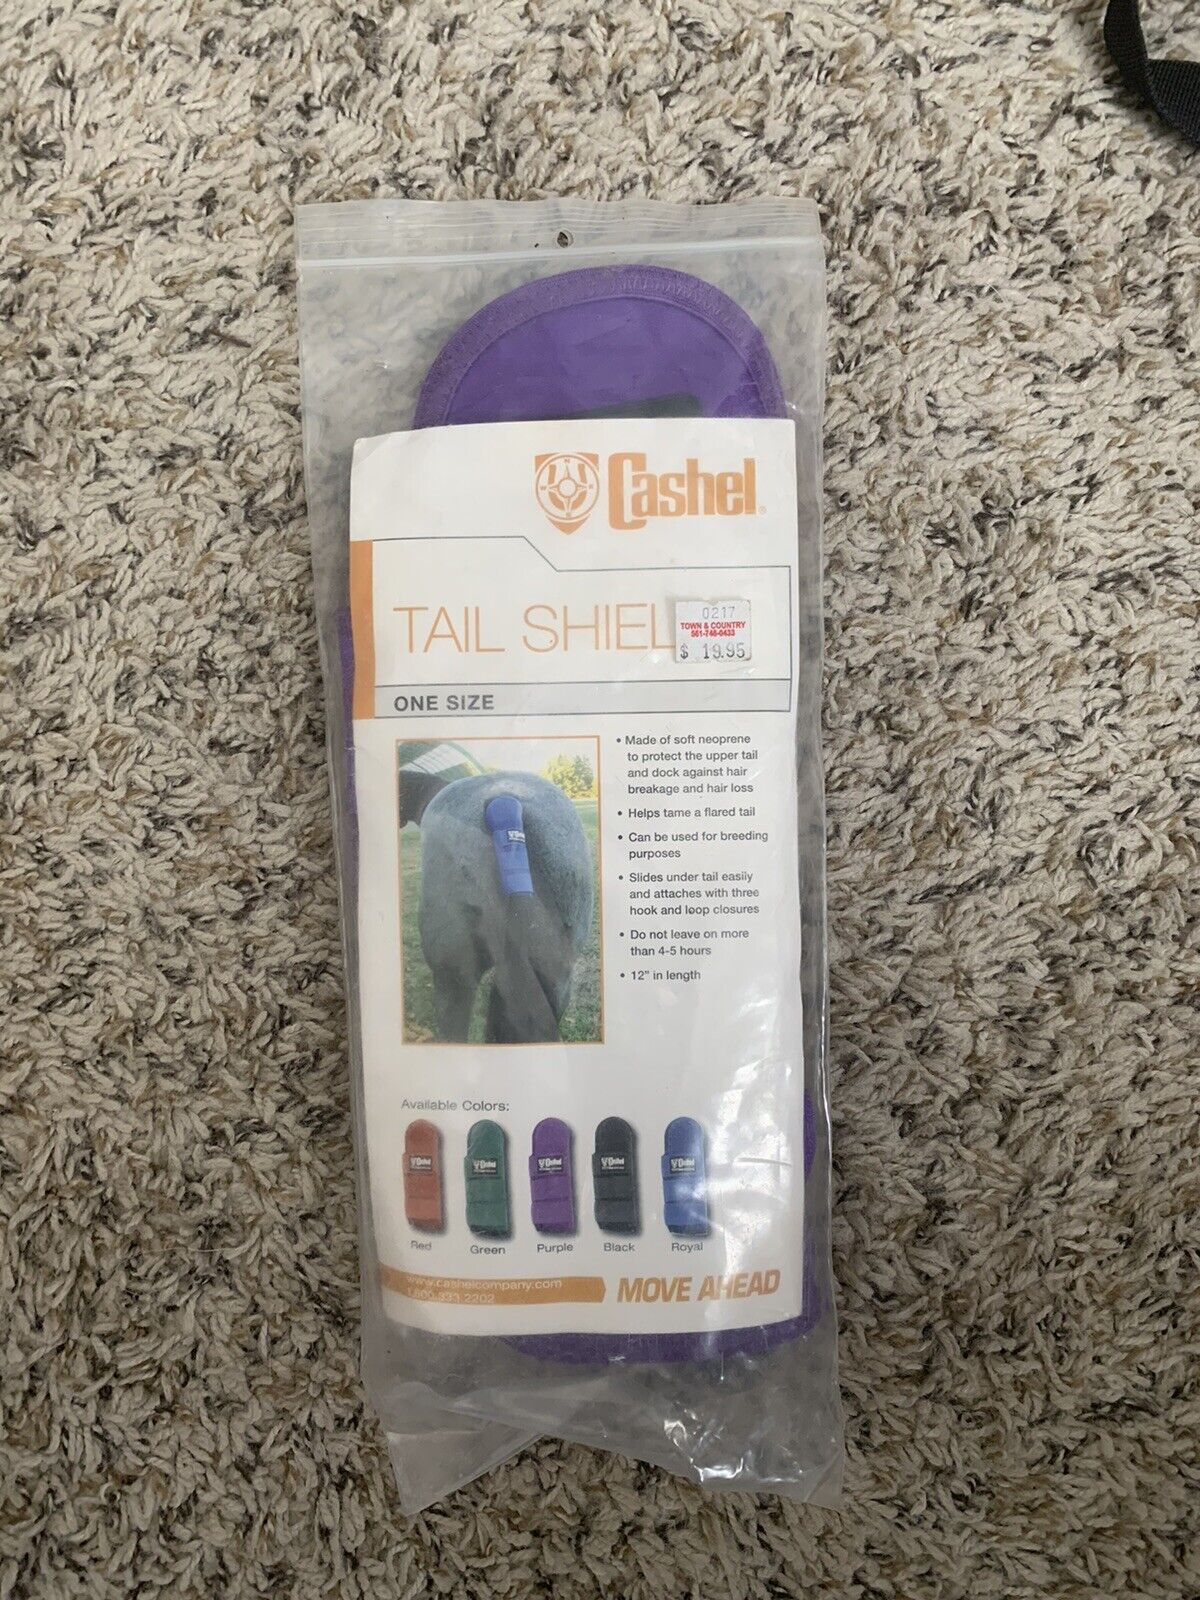 Cashel Horse Tail Shield, Purple, One Size, Neoprene, 12" In Length